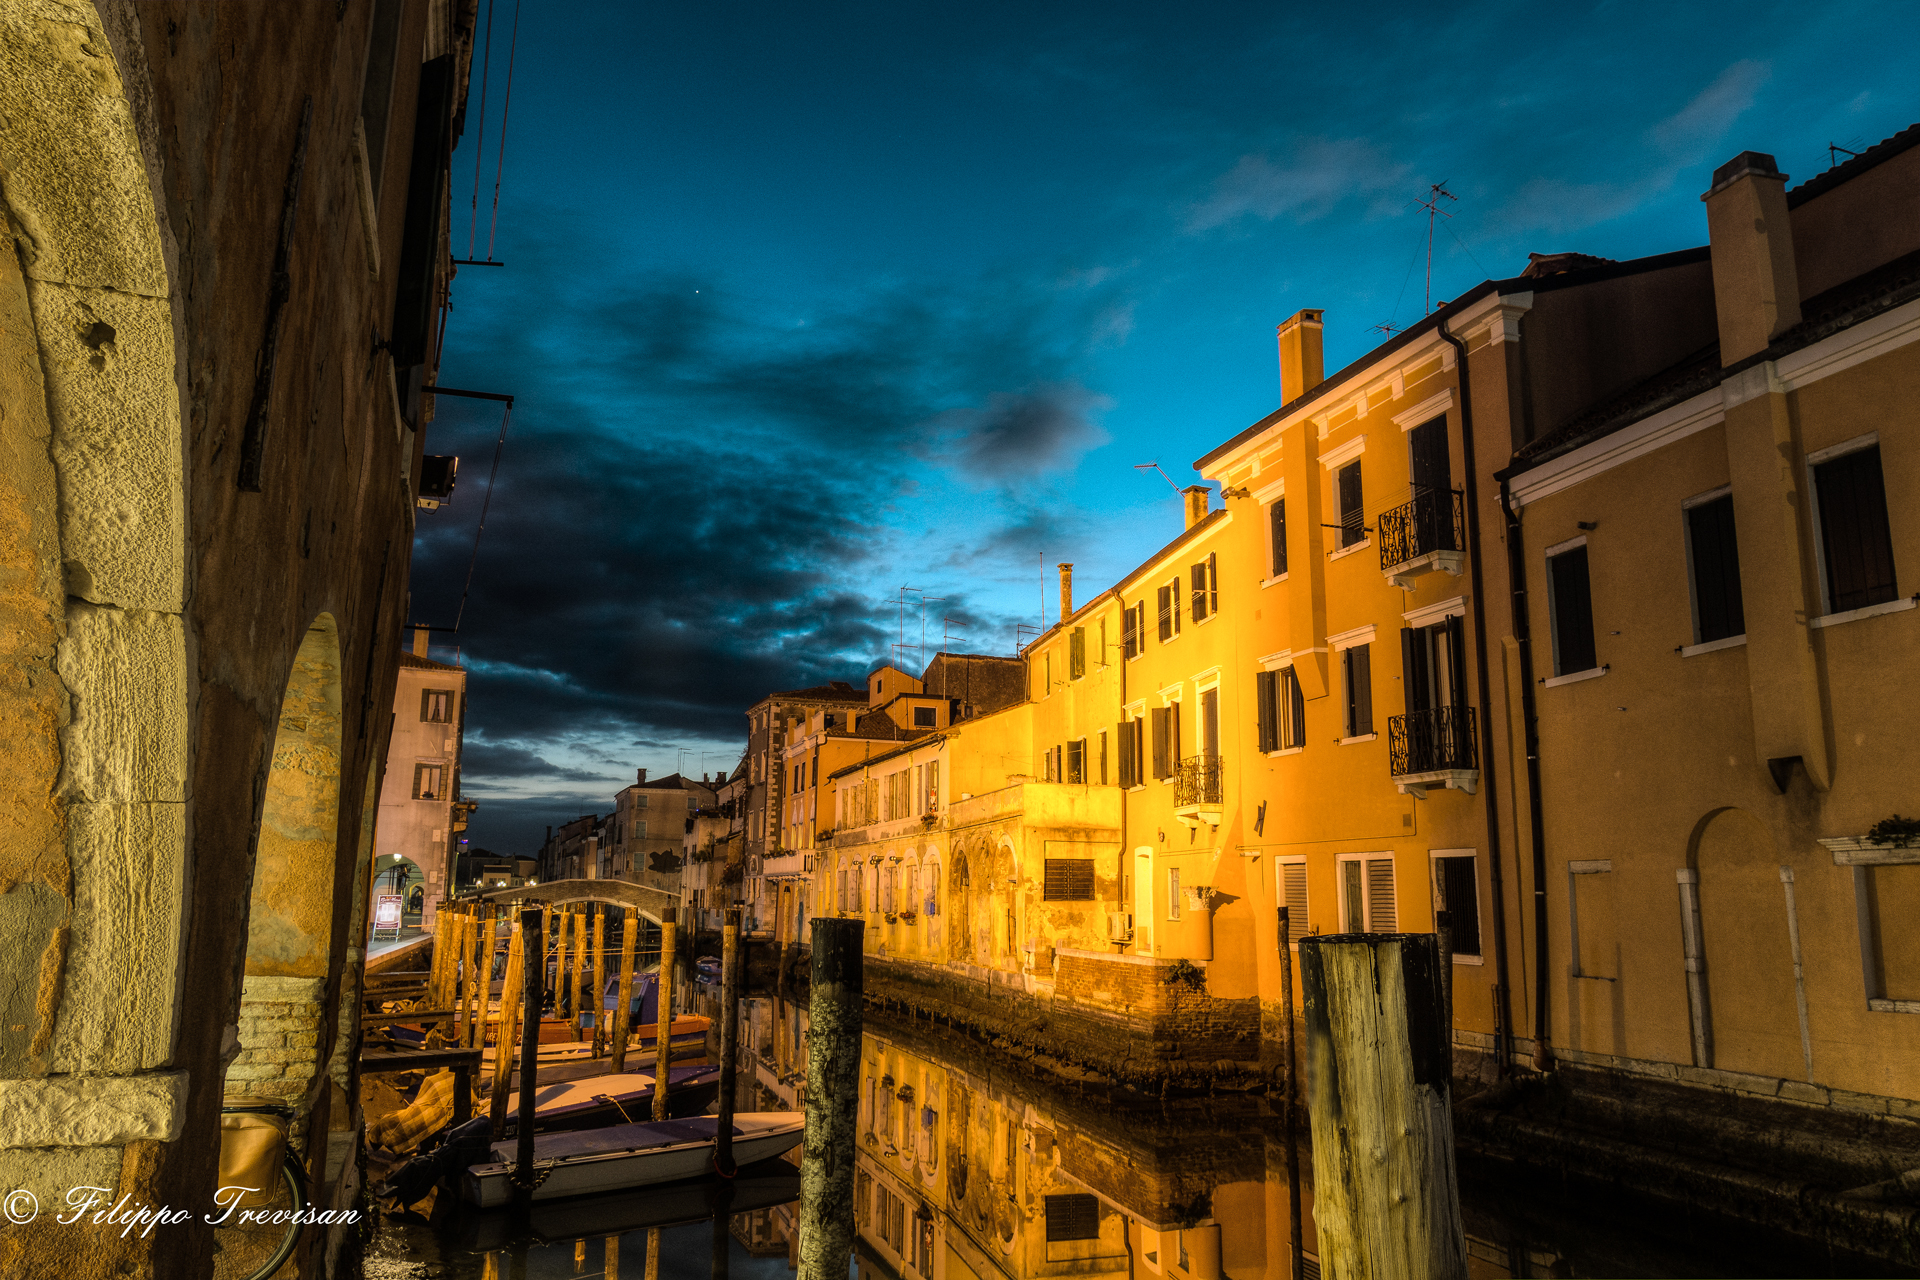 Blue Hour in Chioggia...